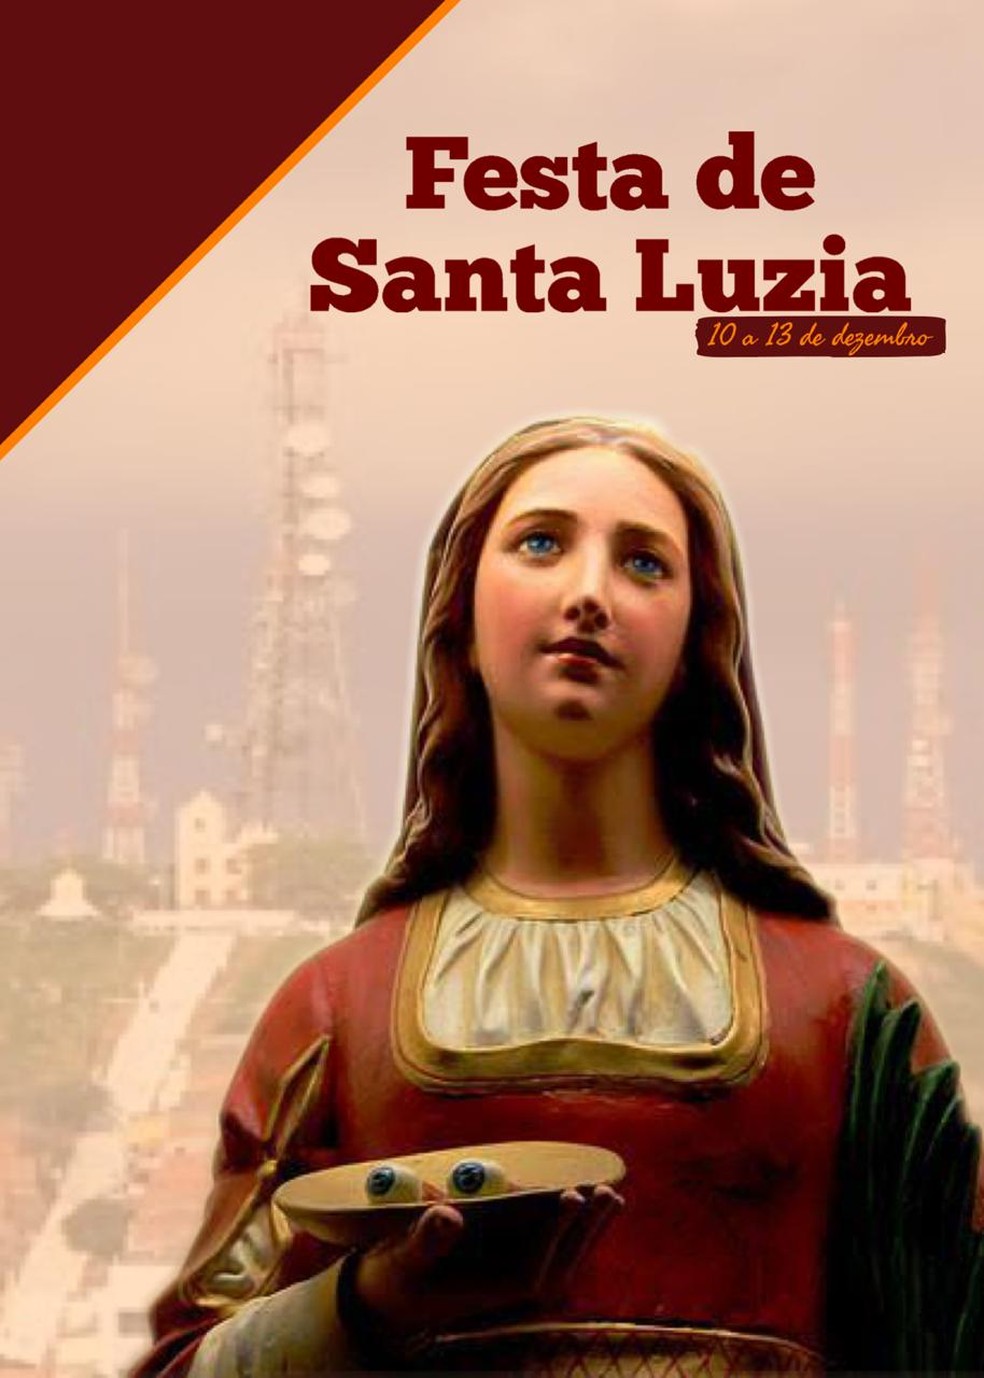 Festa de Santa Luzia inicia no Monte Bom Jesus nesta segunda (10) em  Caruaru | Caruaru e Região | G1